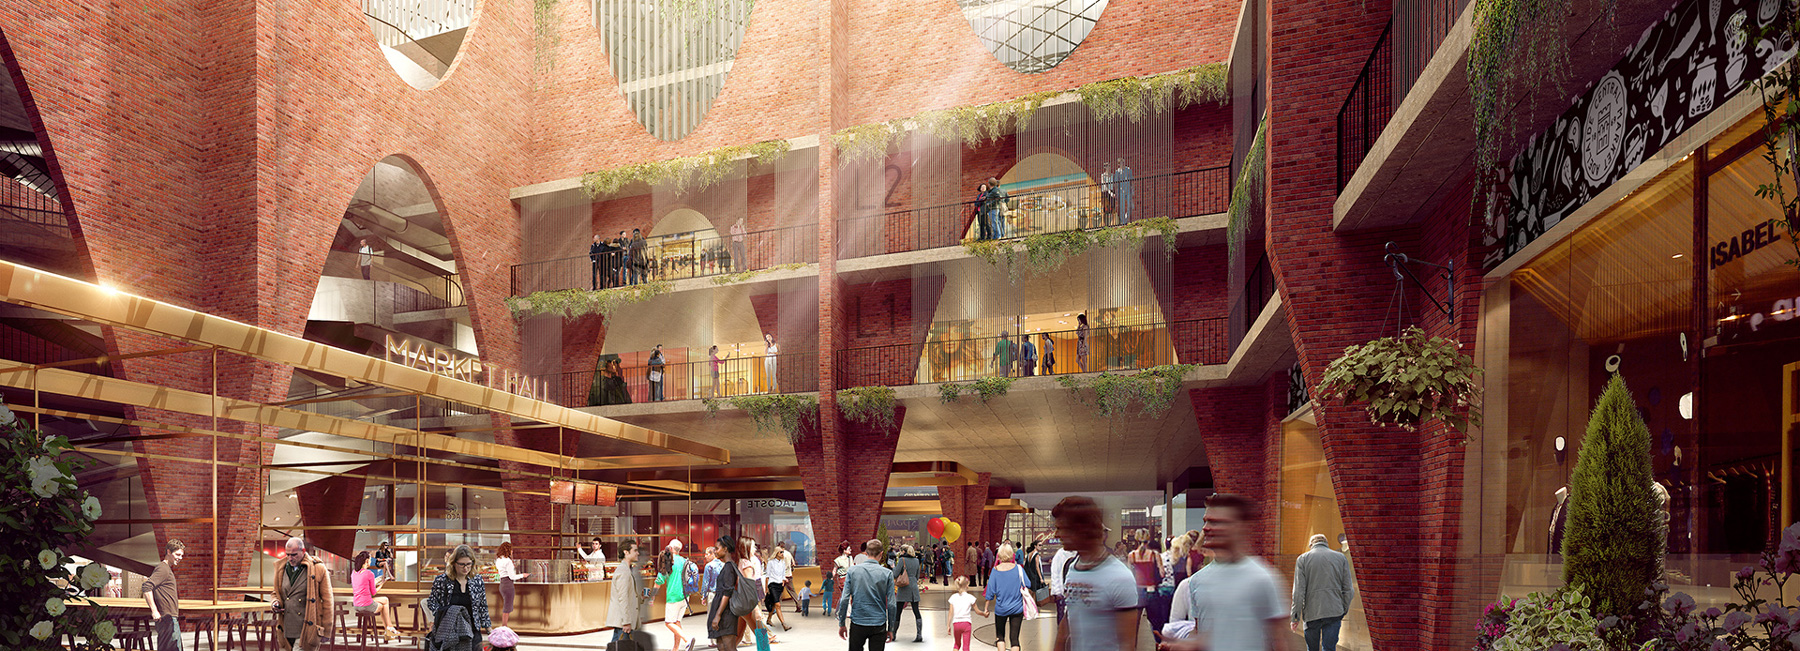 Woods Bagot Reveals Design For Adelaide Central Market